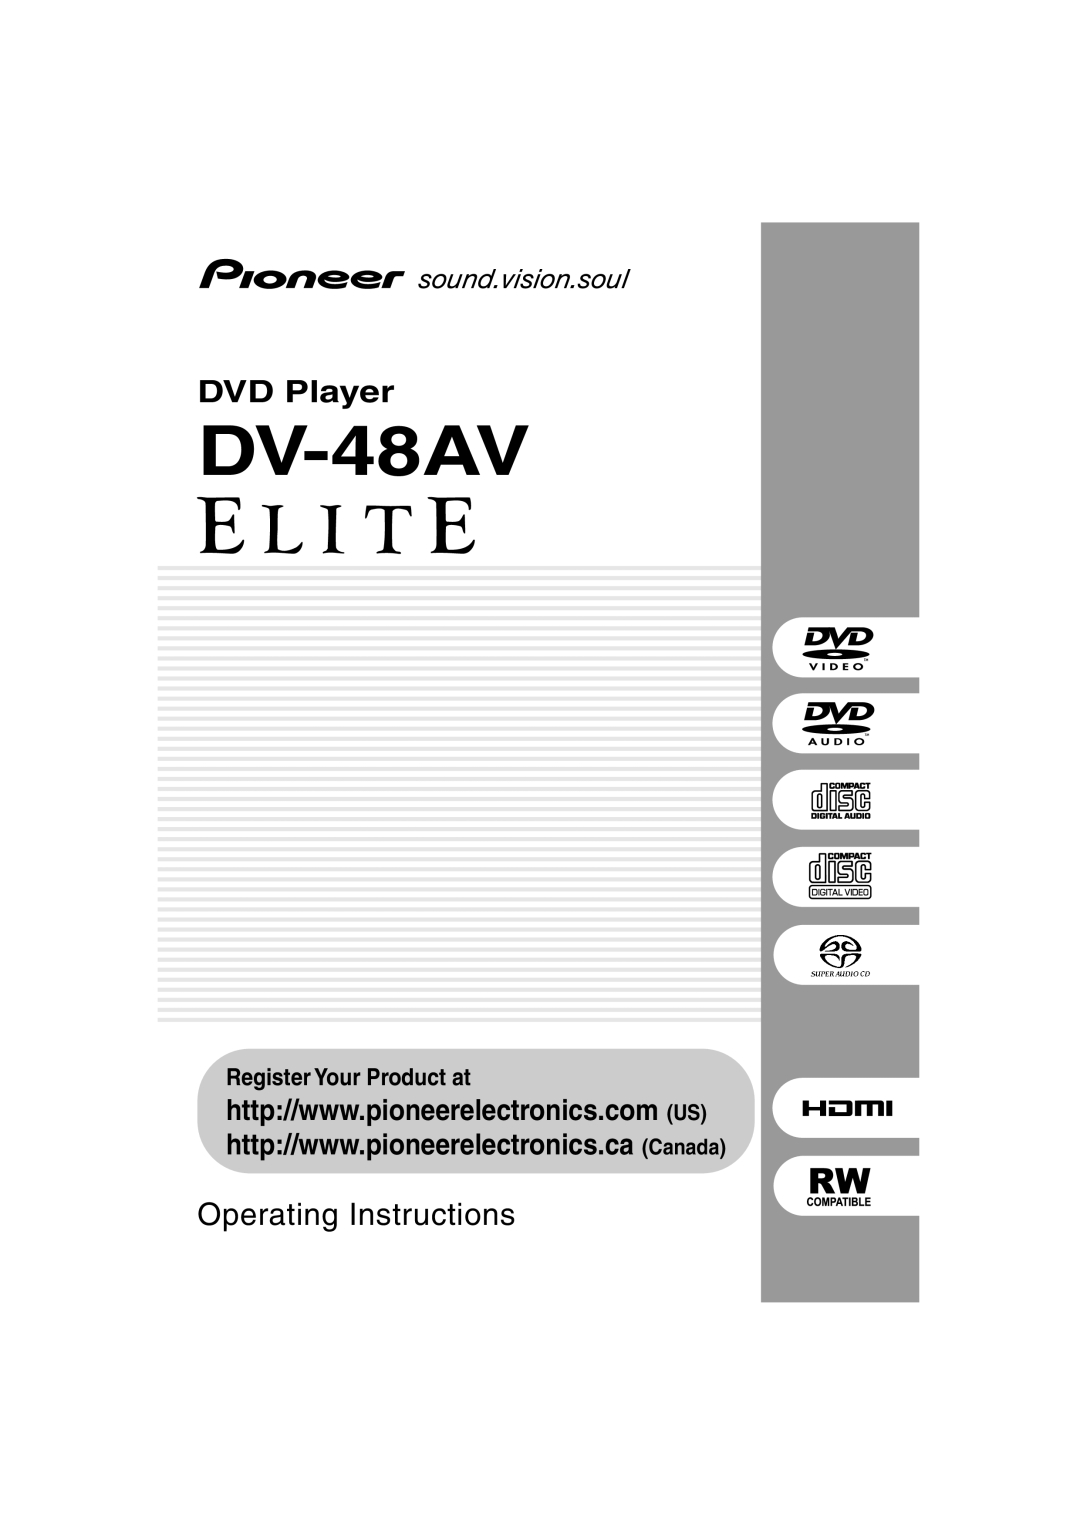 Pioneer DV-48AV operating instructions DVD Player, Operating Instructions, Register Your Product at 